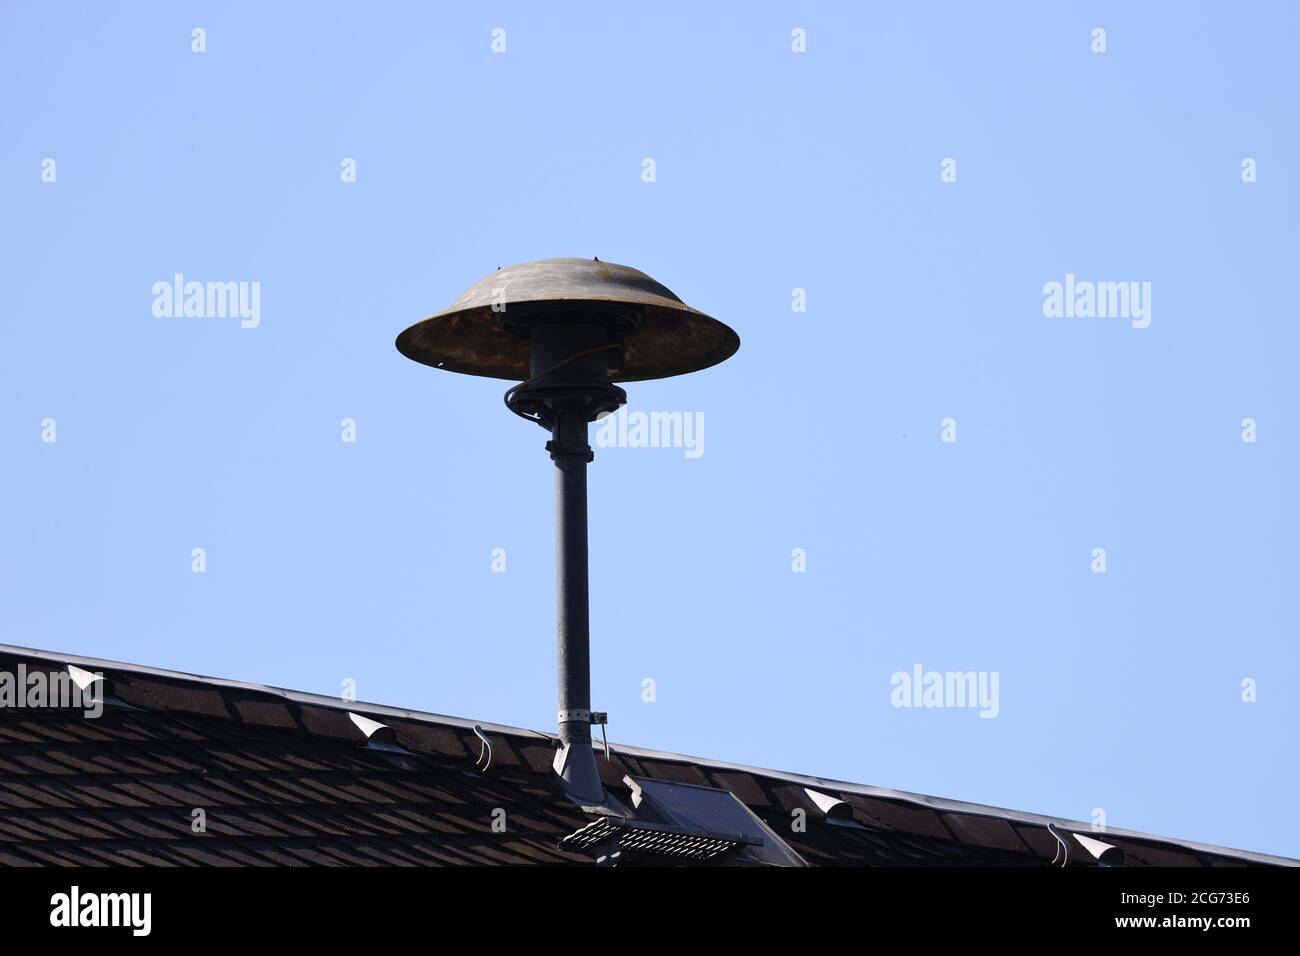 09 septembre 2020, Thuringe, Rückersdorf : une sirène d'alarme est montée  sur le toit de l'hôtel de ville. Le jour d'alerte à l'échelle de  l'Allemagne, le 10.09.2020, ce sera la première alarme